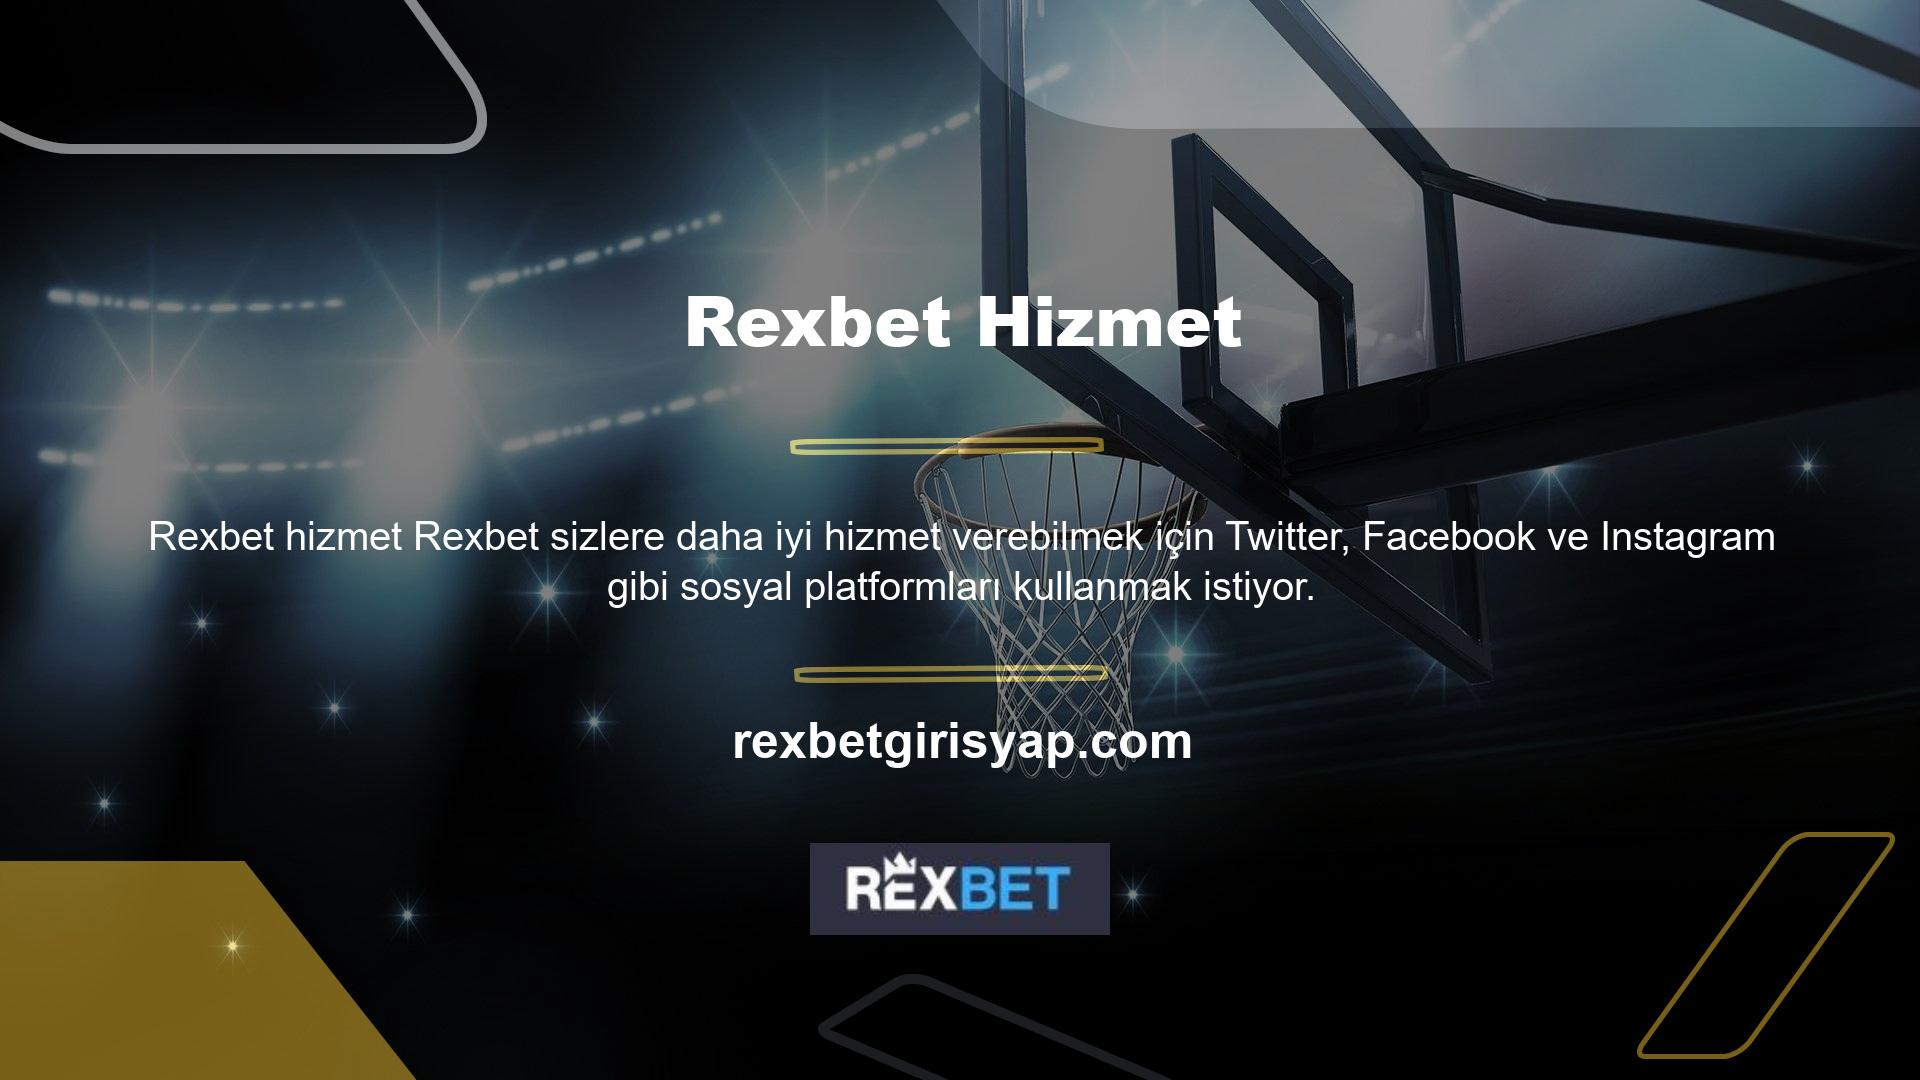 Rexbet şirketi her zaman bu yolda başarılı olmuş ve müşterilerini her zaman memnun etmiştir